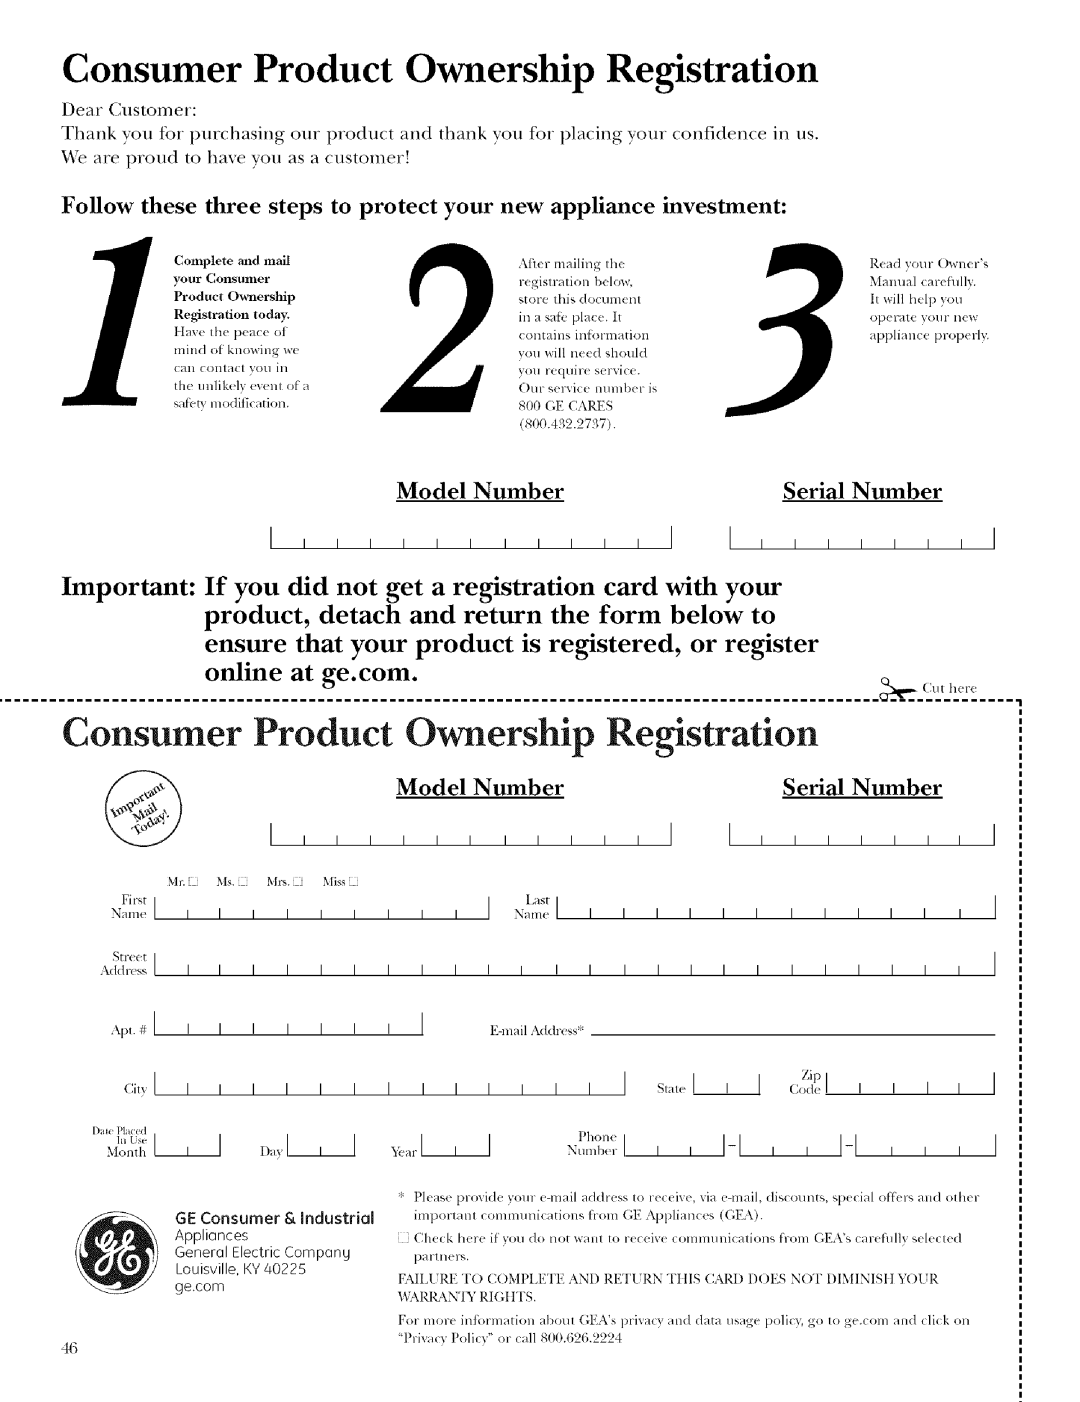 GE ZET958 Consumer Product Ownership Registration, S,a,,,I, A <:od<I, xv,_ltl, Model Number, Serial Number, I N_Lstlml 